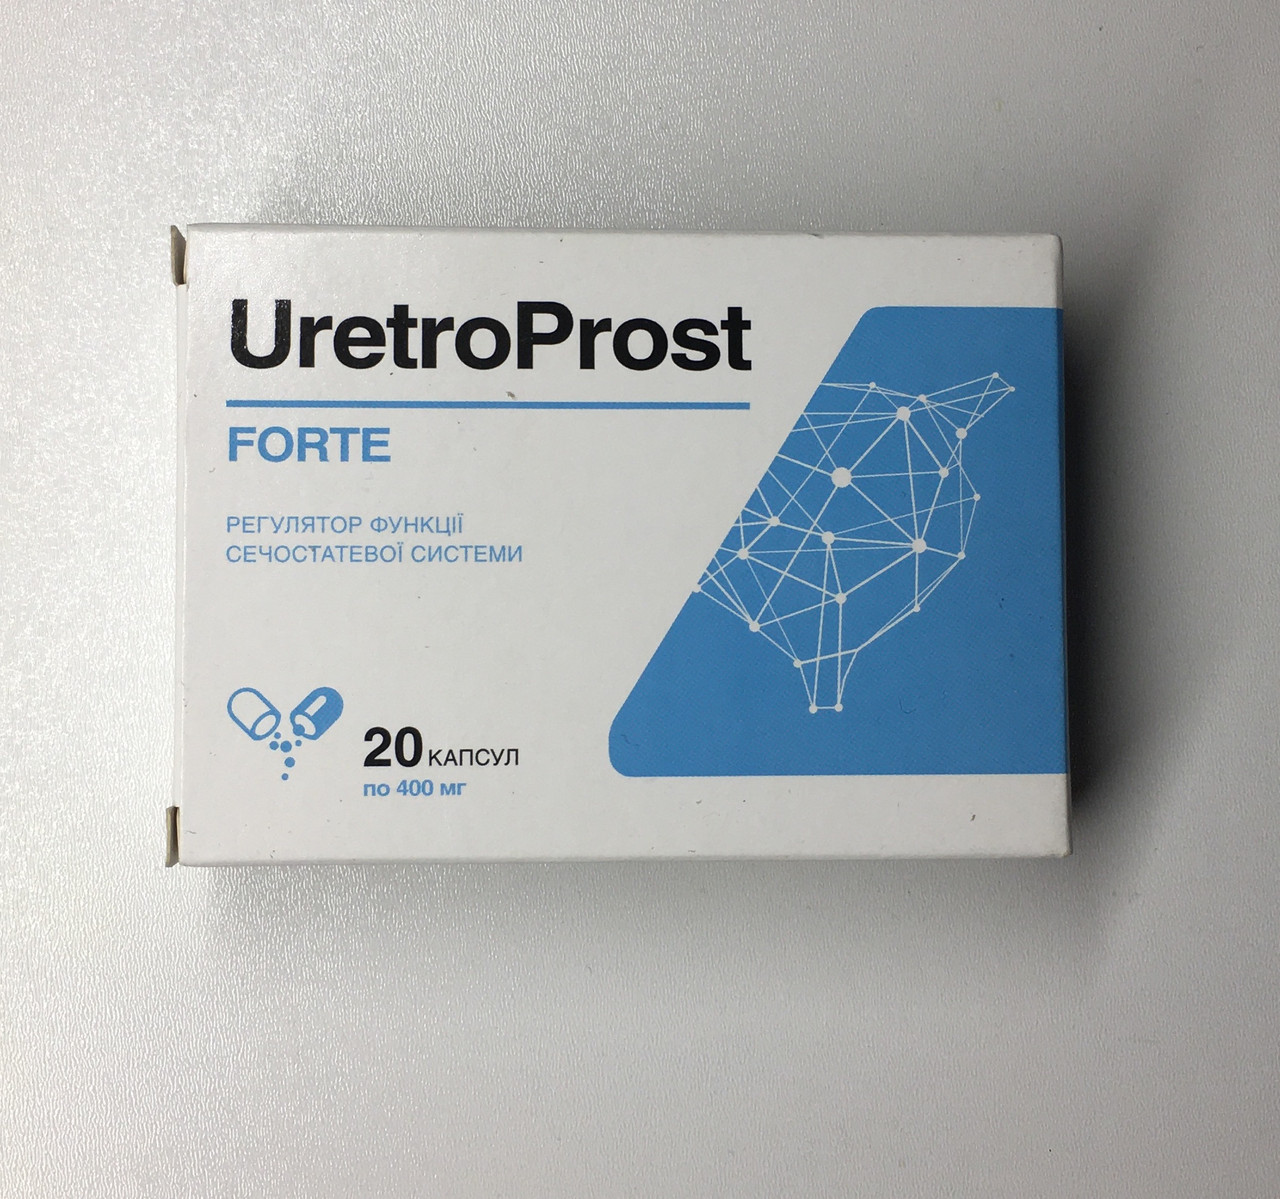 UretroProst - Капсулы от простатита (УретроПрост) 20 шт. Регулятор функции мочеполовой системы